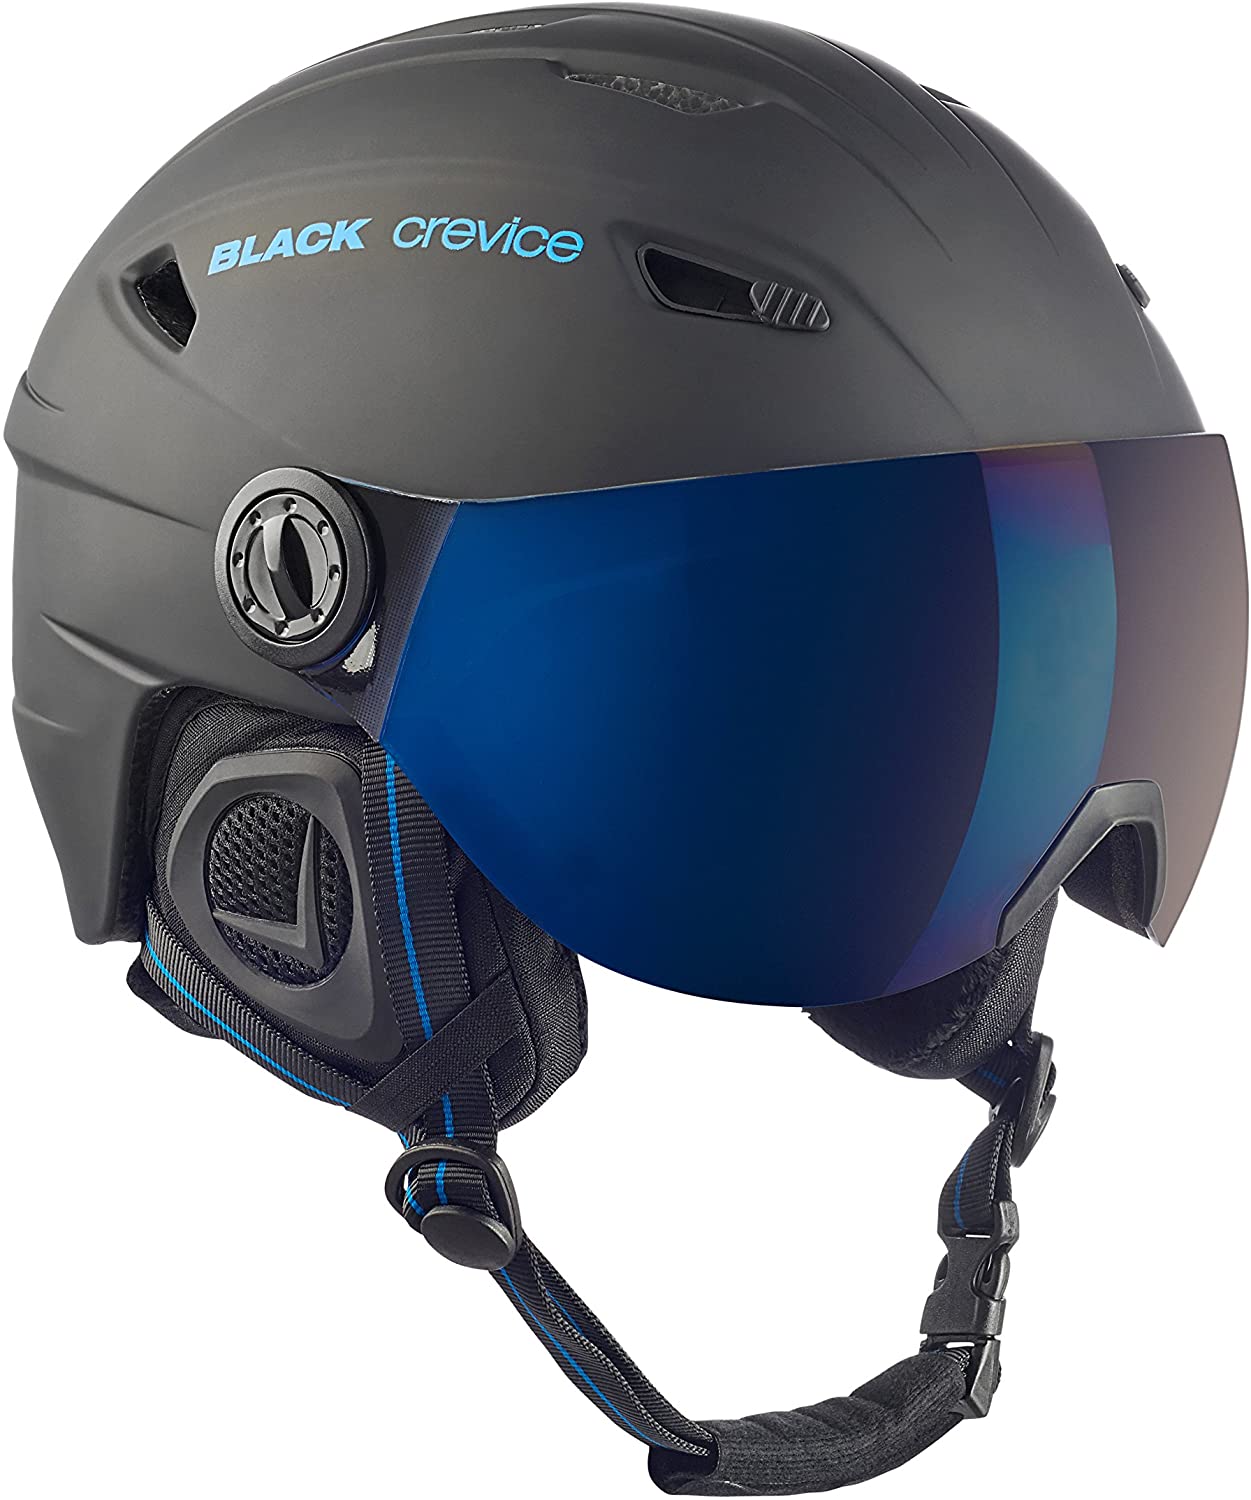 Best Ski Helmet with Visors